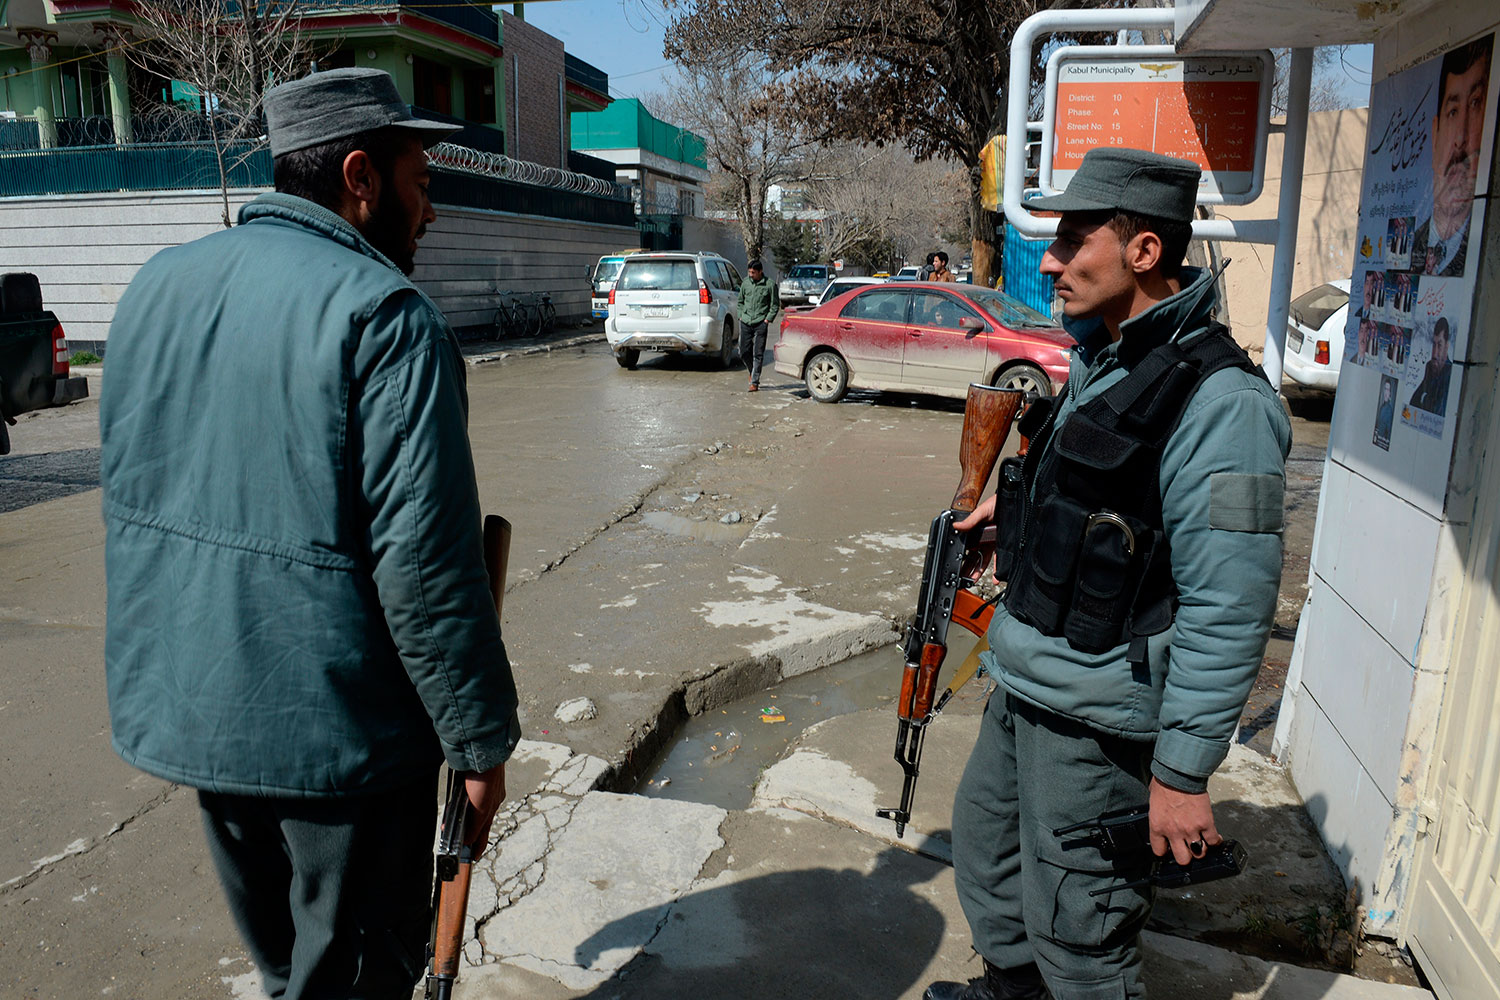 Dos desconocidos disparan en la nuca al periodista sueco, Nils Horner, en Kabul